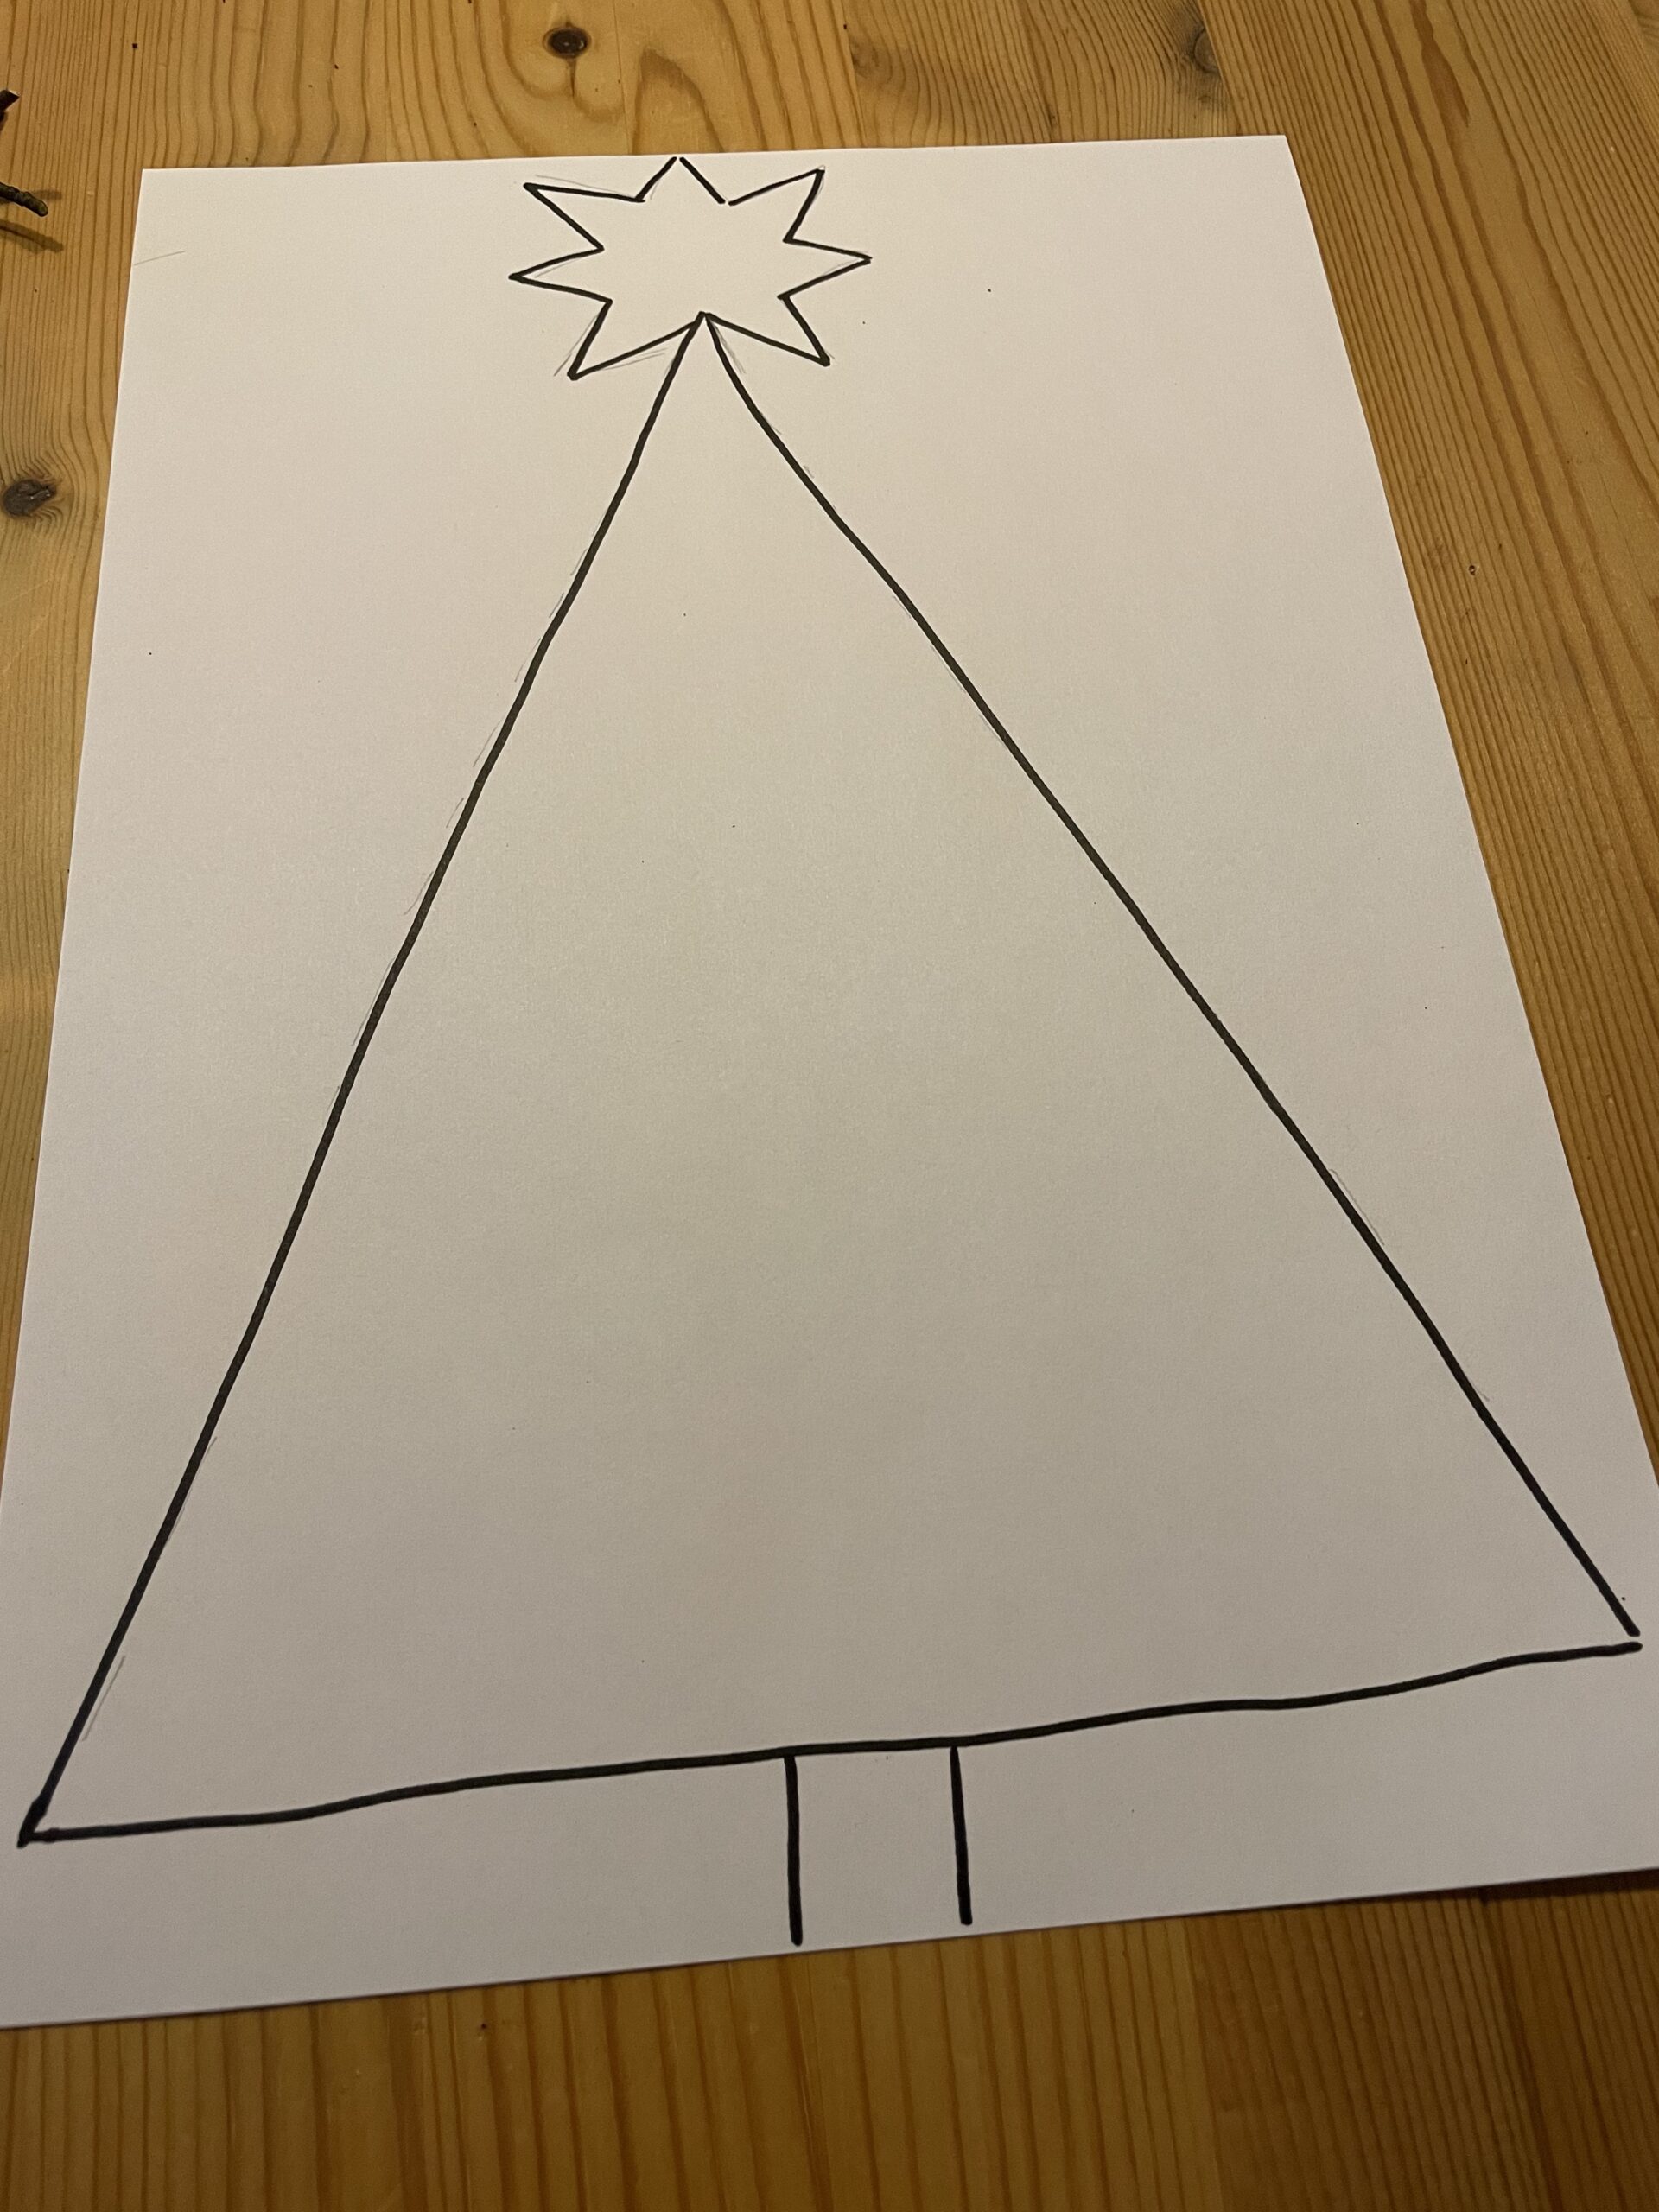 Bild zum Schritt 6 für das Bastel- und DIY-Abenteuer für Kinder: 'Malt euch nun einen möglichst ähnlichen Tannenbaum auf das Blatt.'